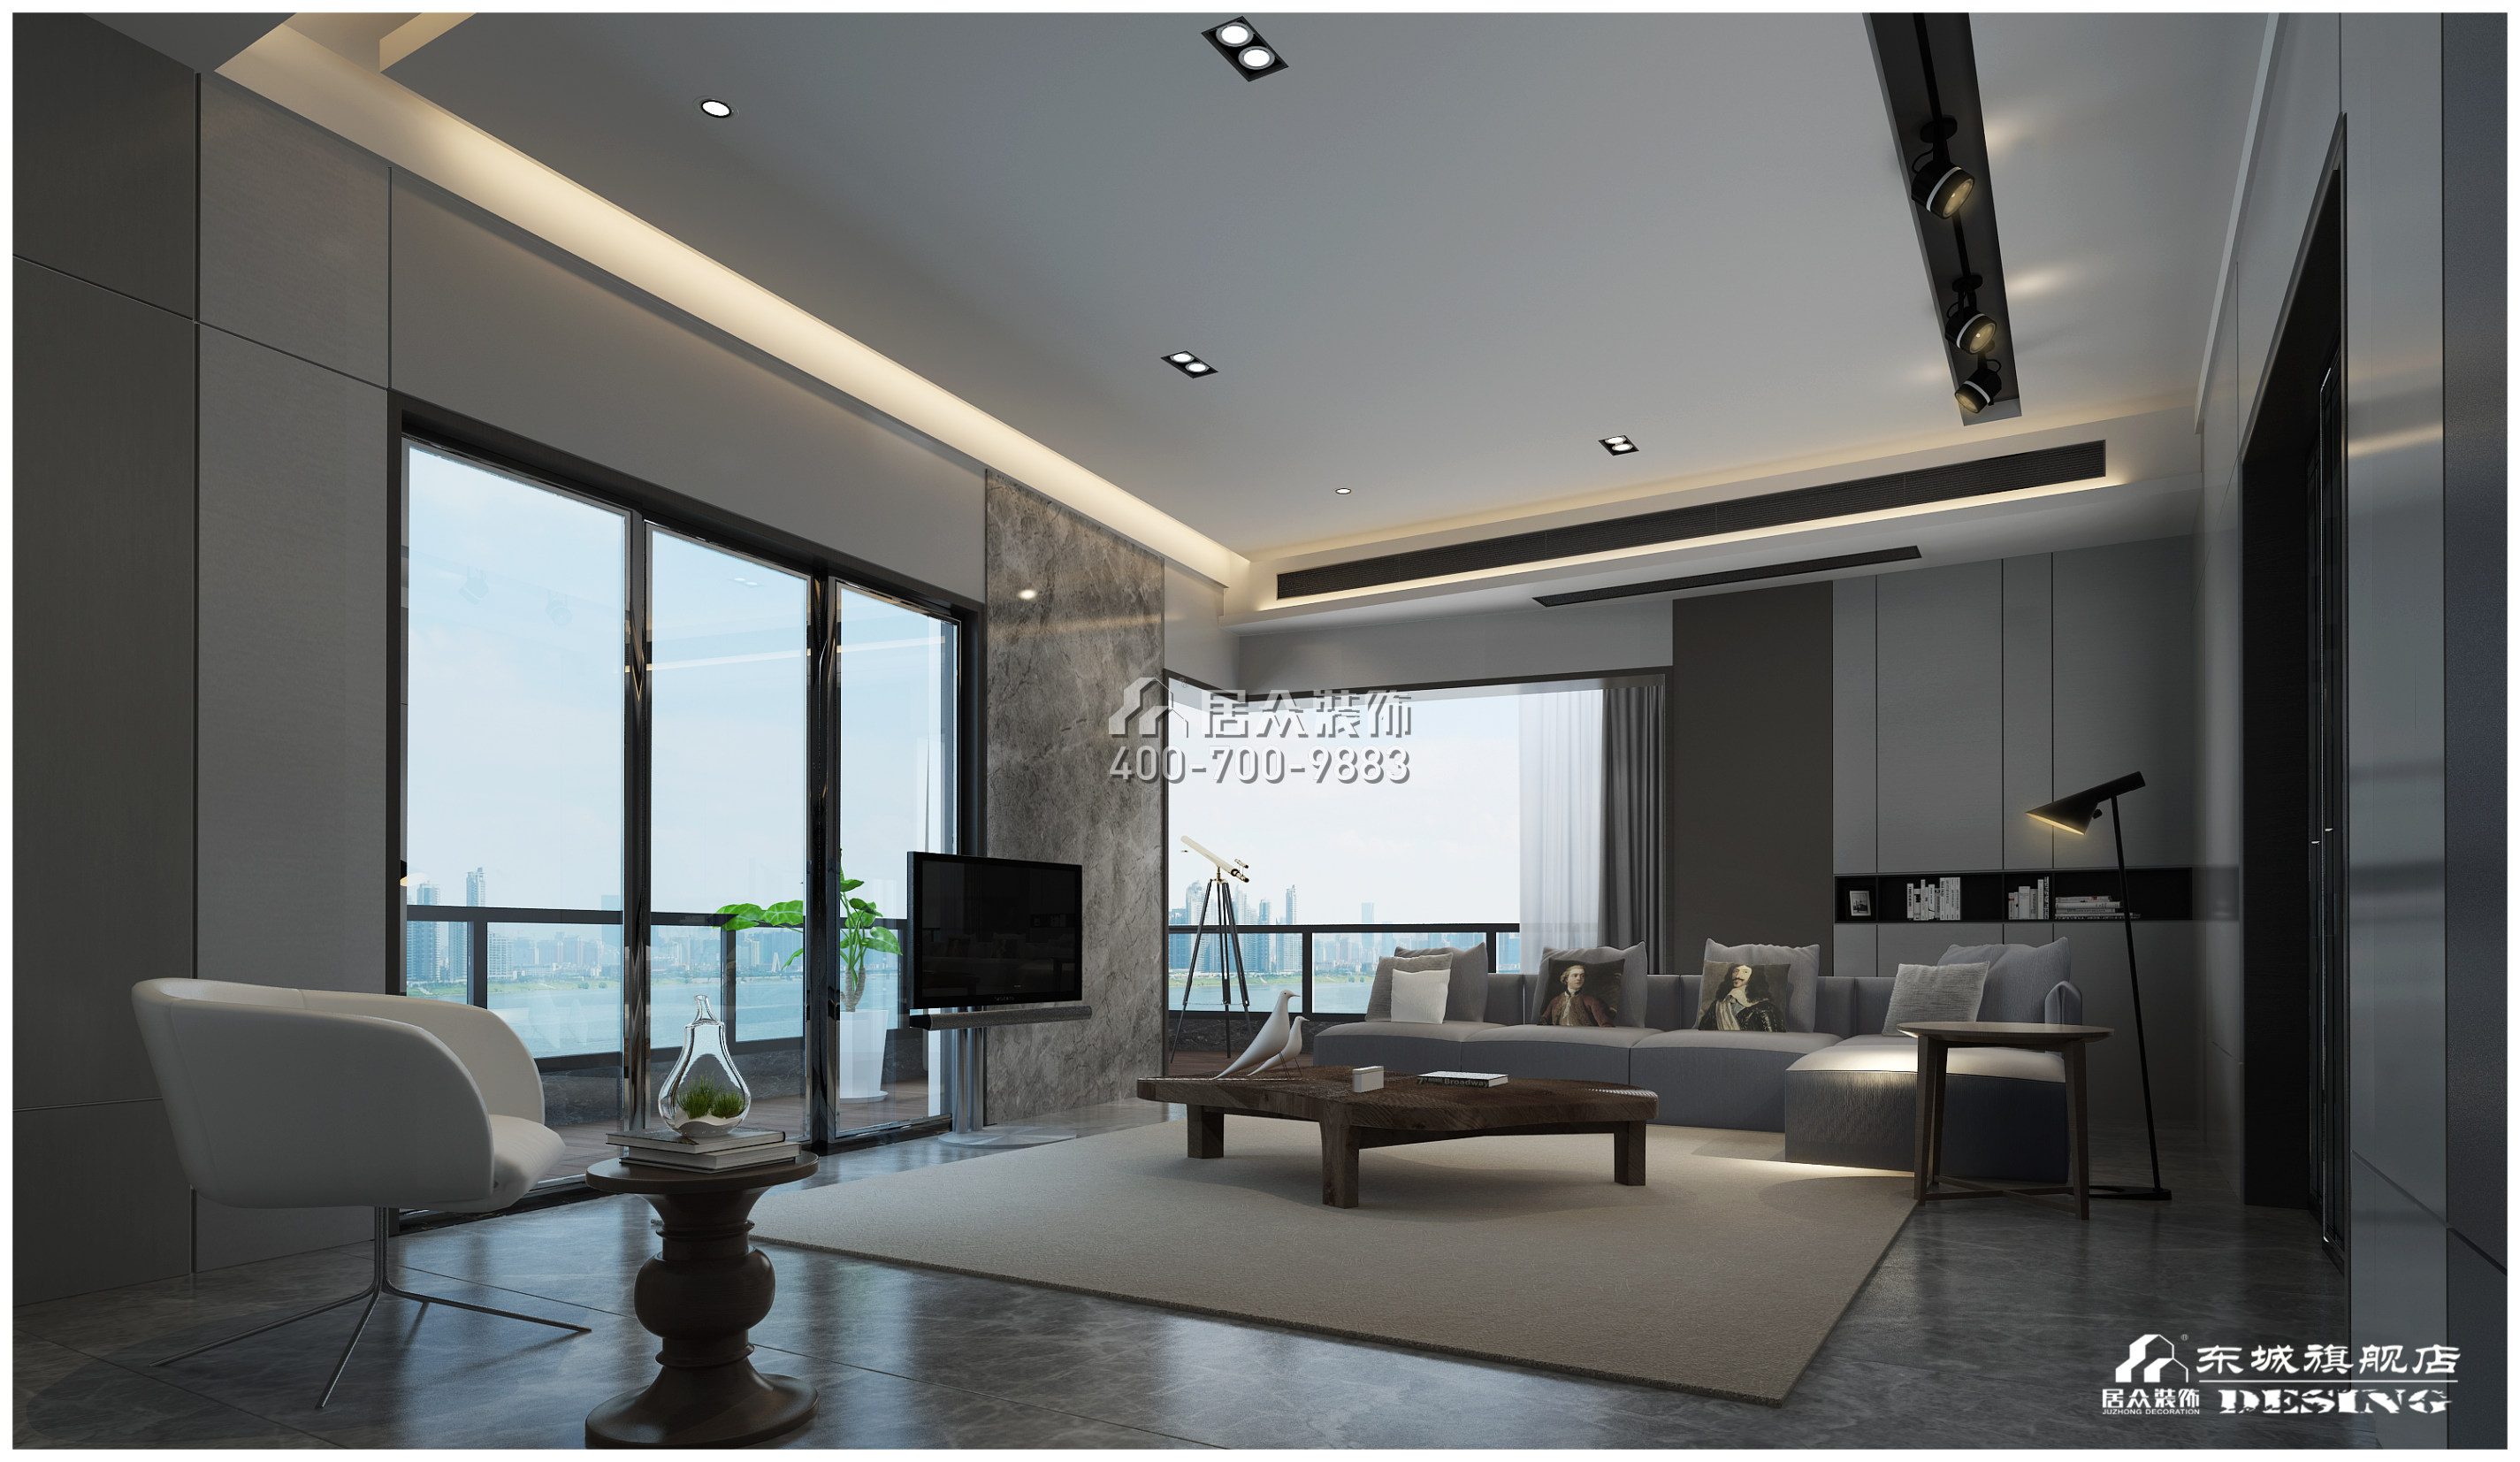 北辰定江洋285平方米現代簡約風格平層戶型客廳裝修效果圖